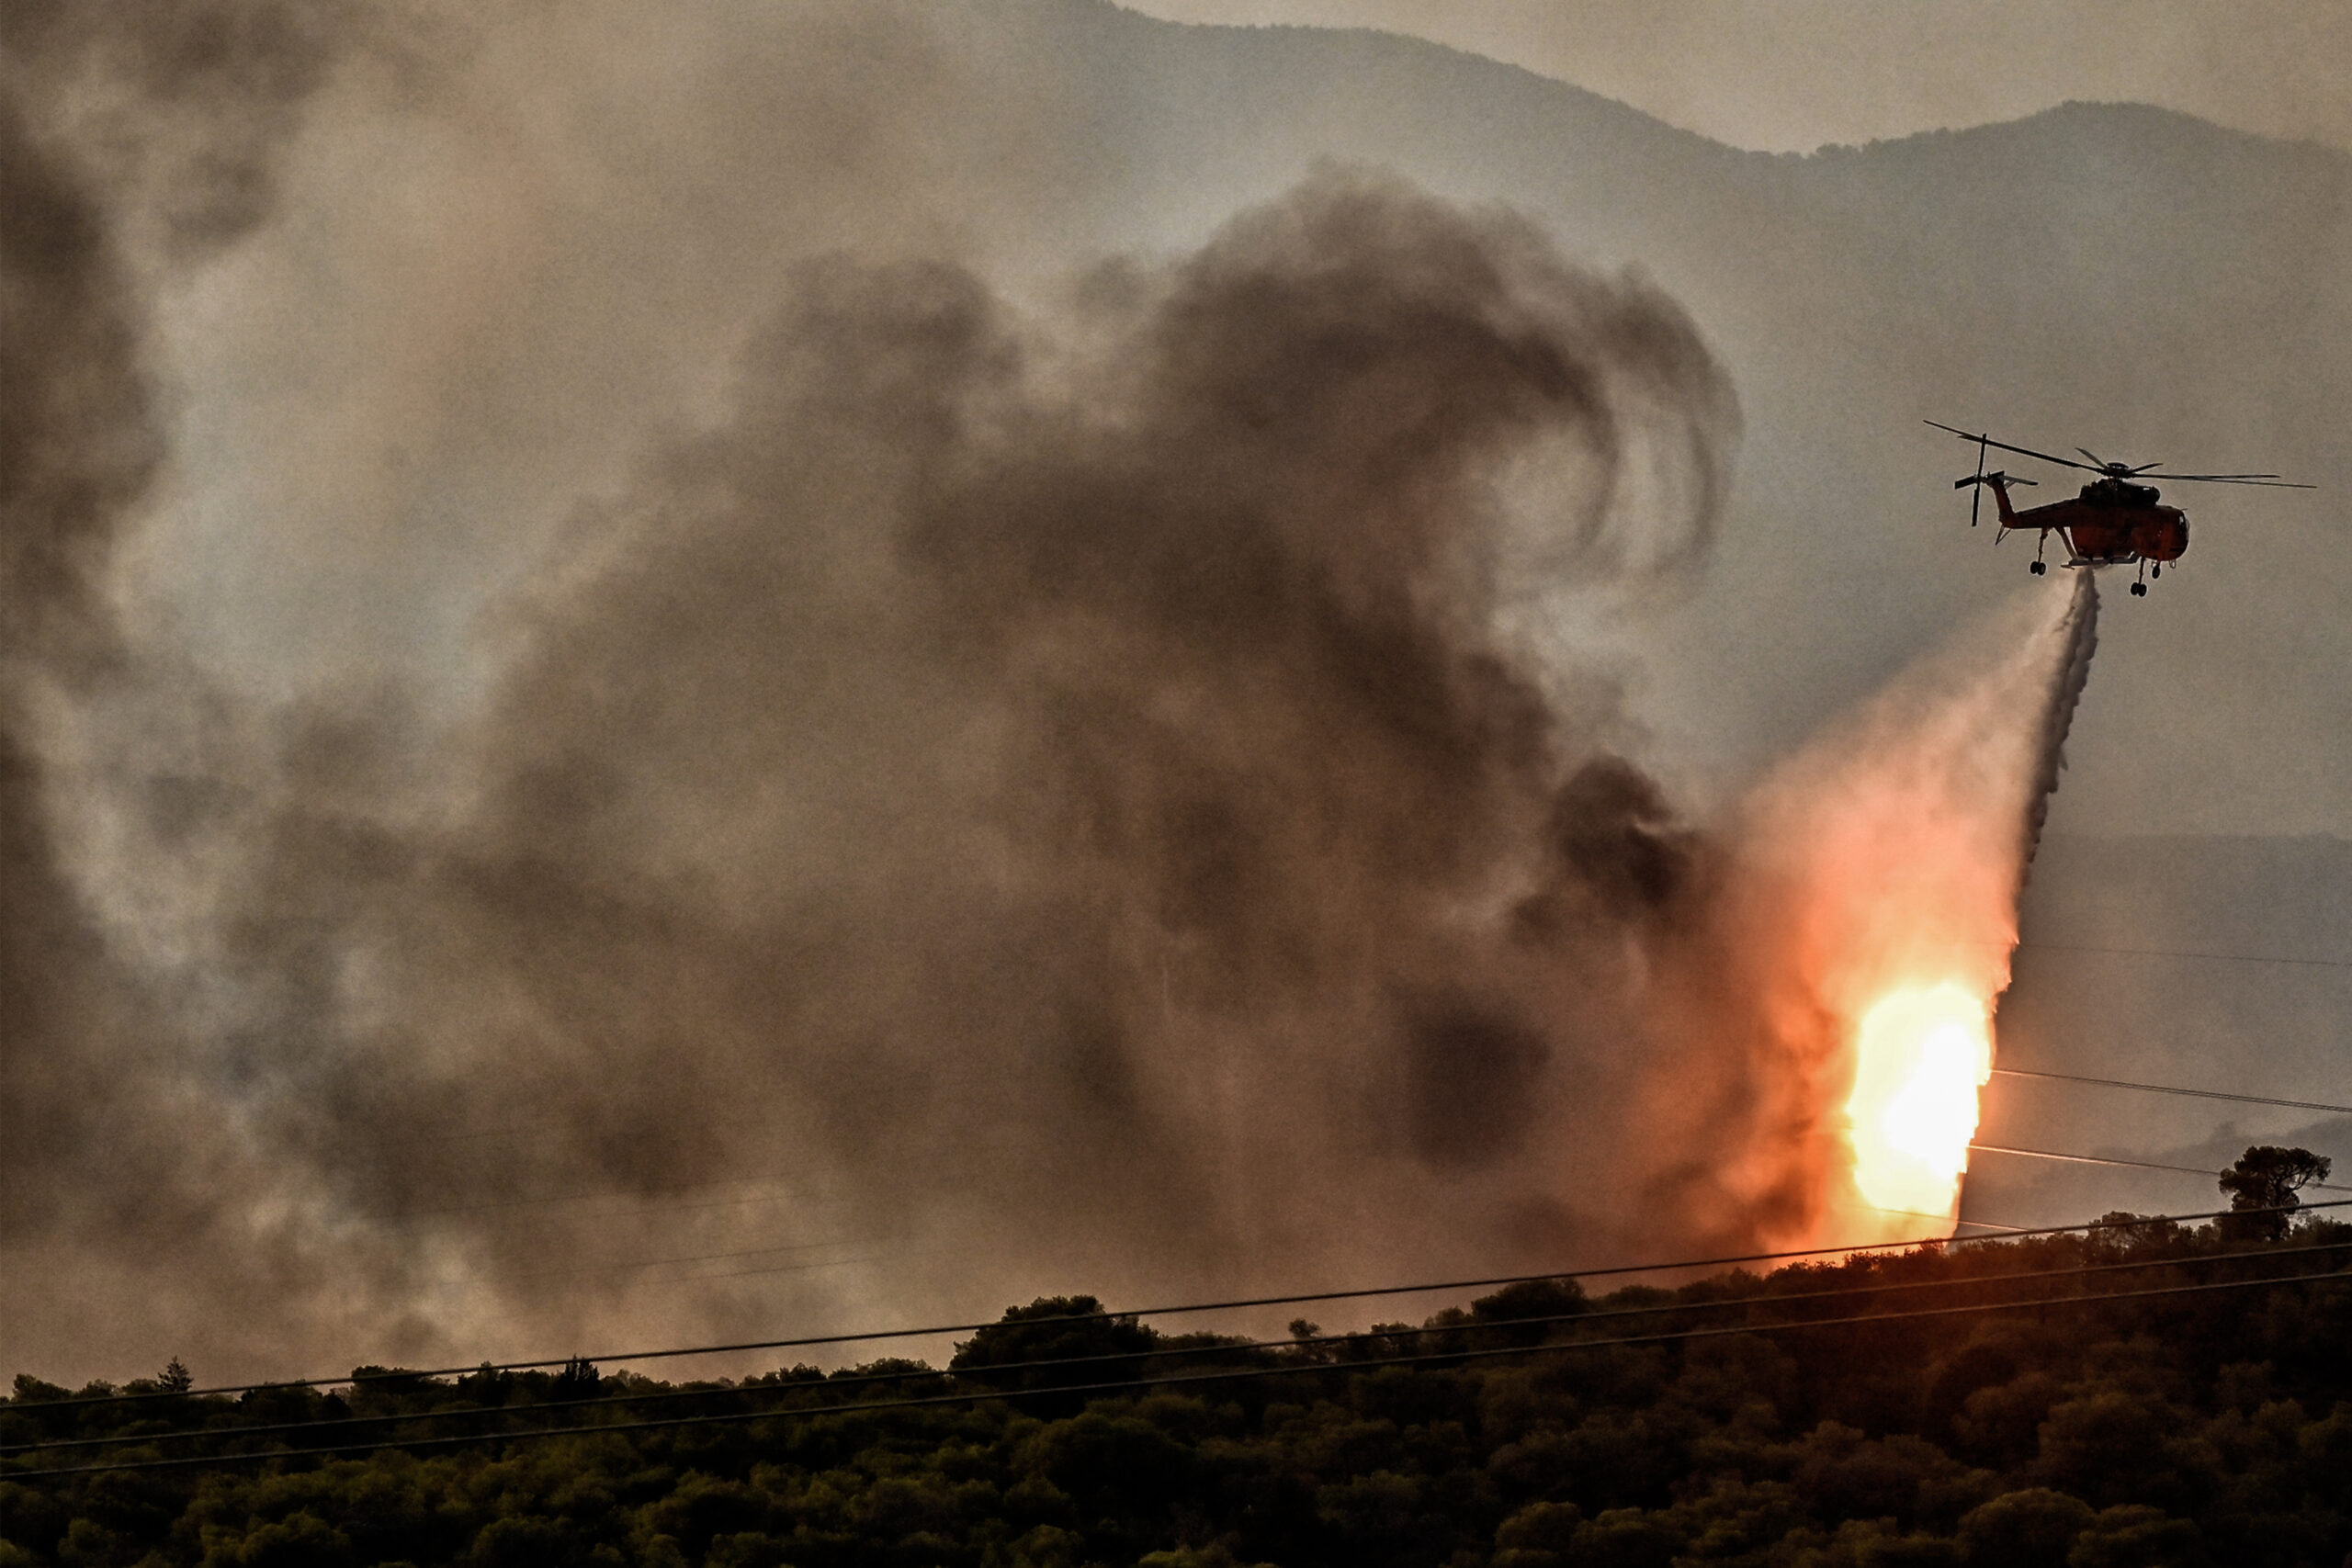 Μαίνεται η φωτιά στα Μέγαρα, κοντά σε σπίτια οι φλόγες – Μάχη με το χρόνο στο Λουτράκι